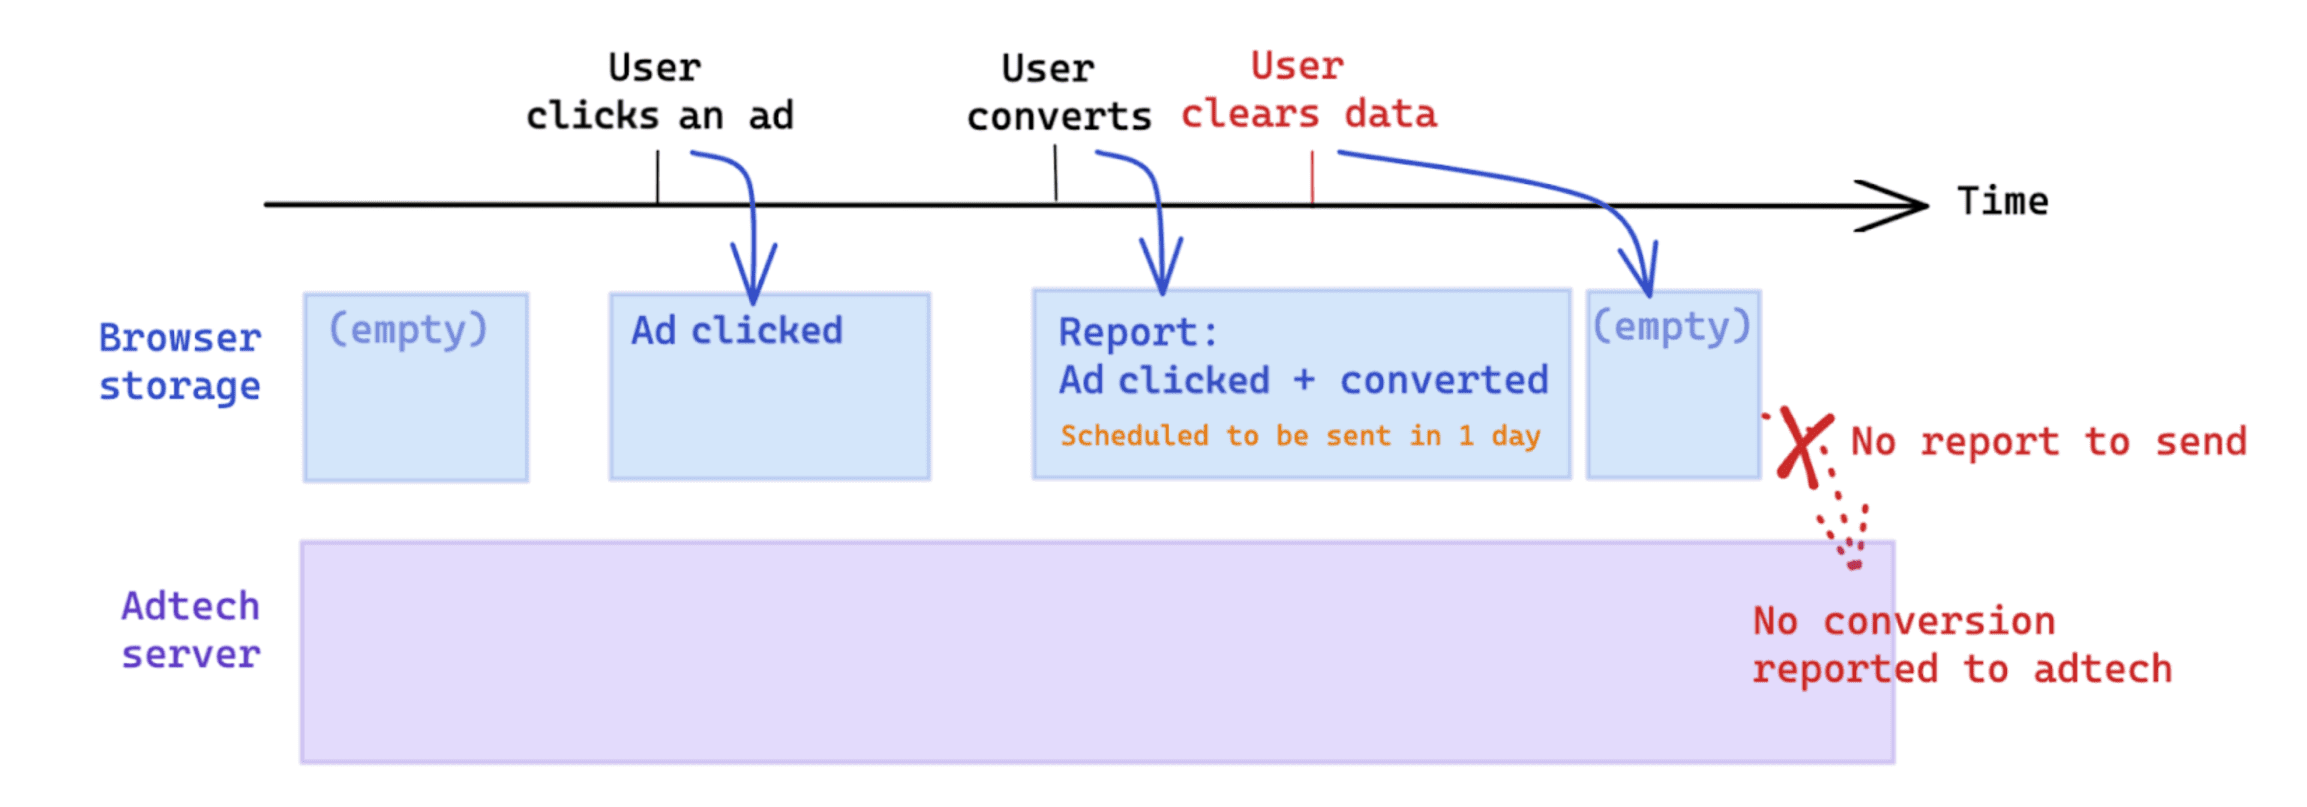 پاکسازی داده‌های شروع شده توسط کاربر پس از تبدیل بر اندازه‌گیری بر اساس API گزارش Attribution تأثیر می‌گذارد.